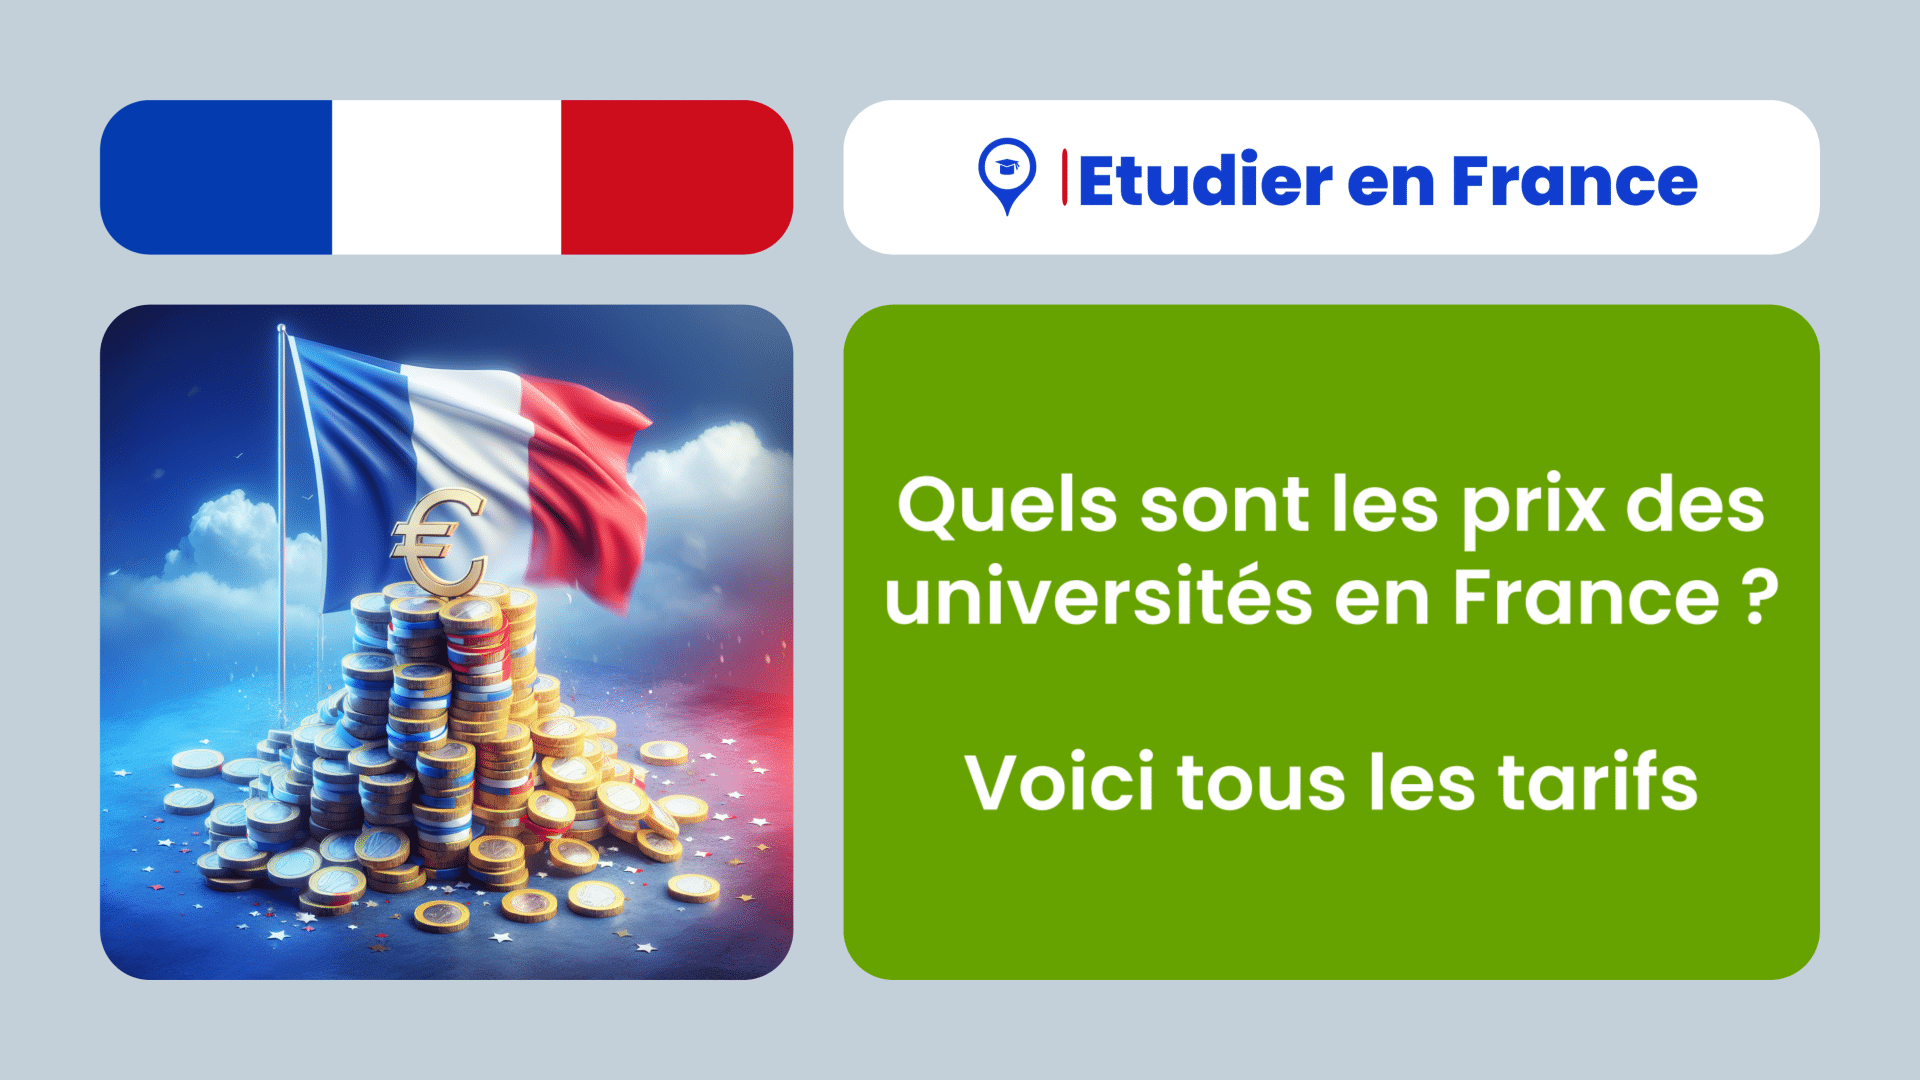 Quels sont les prix des universités en France ? Voici tous les tarifs